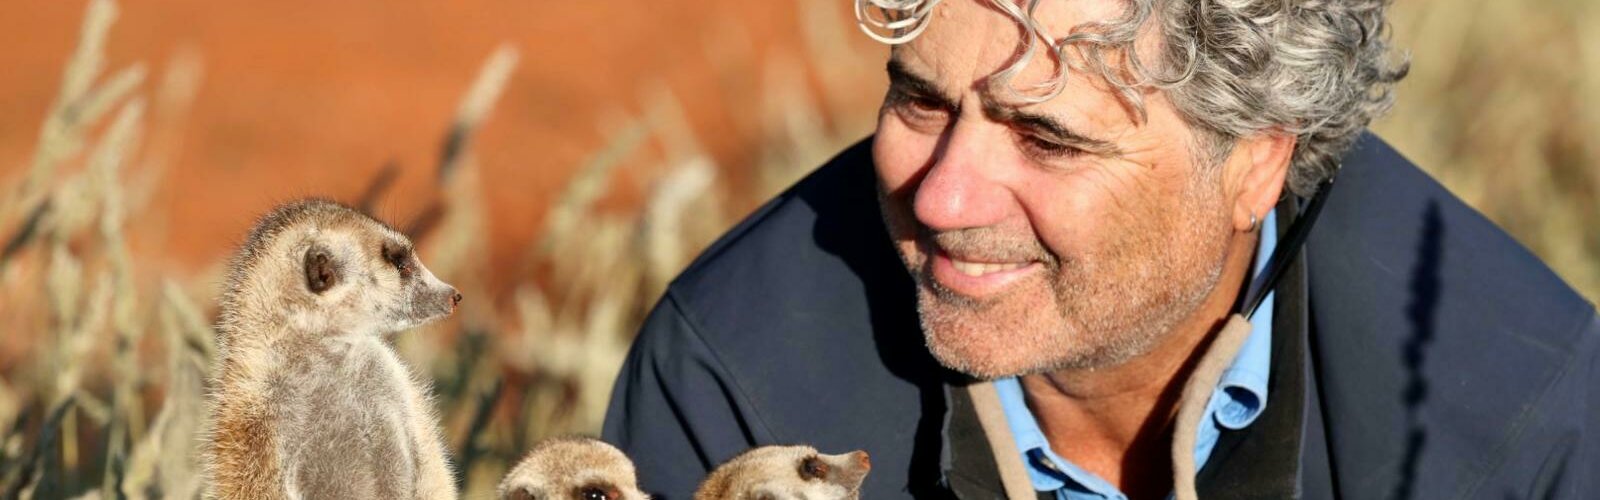 Naturfilmer Jens Westphalen in der Kalahari-Wüste mit Erdmännchen